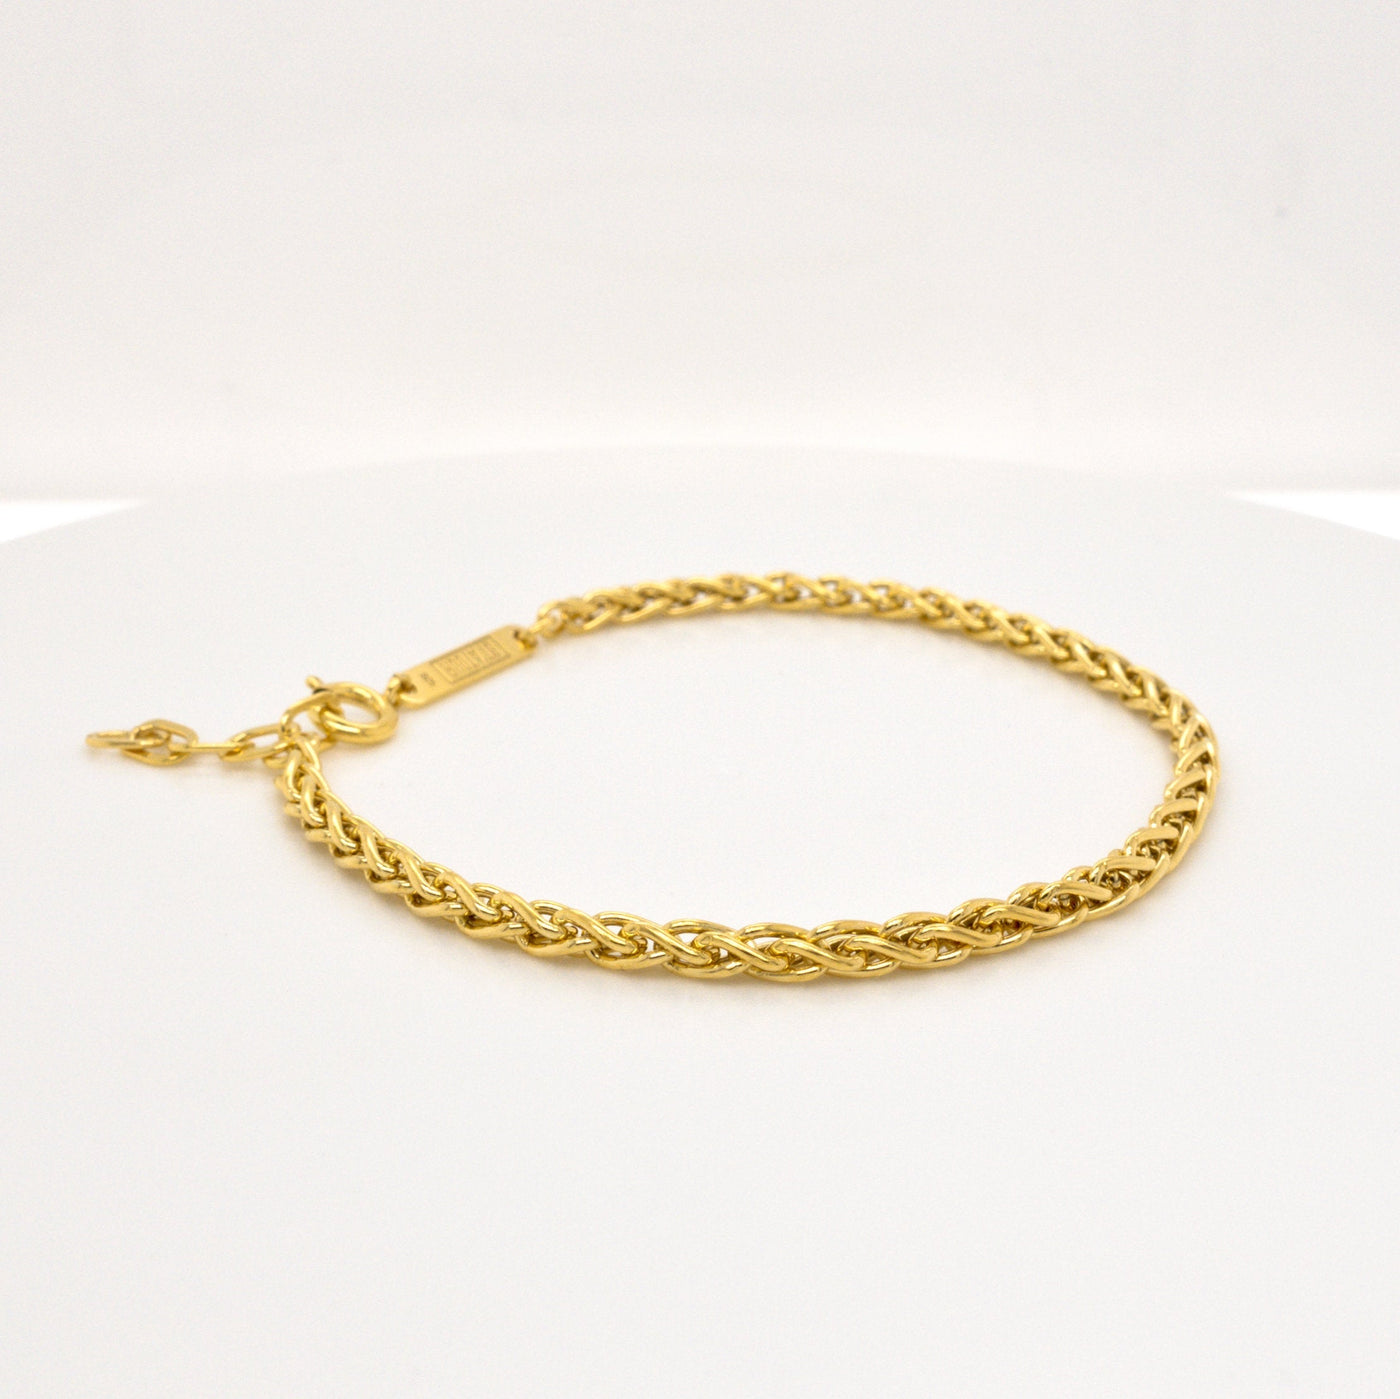 JUNA – Armband in Gold, Silber oder Roségold